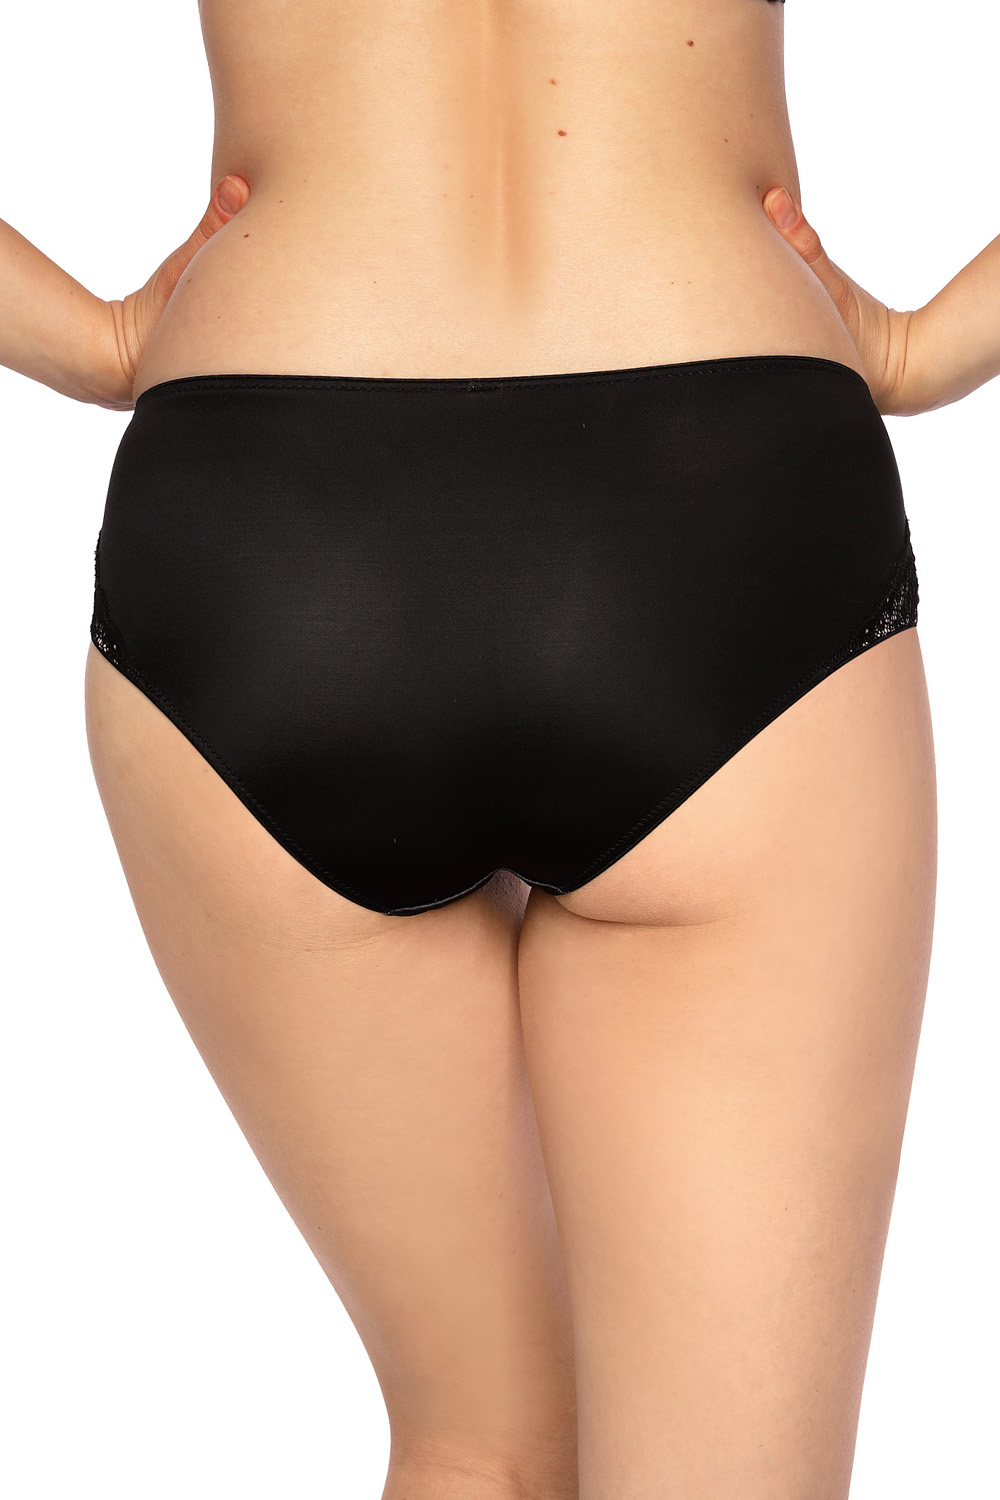 Panties model 138177 Gaia black Ladies